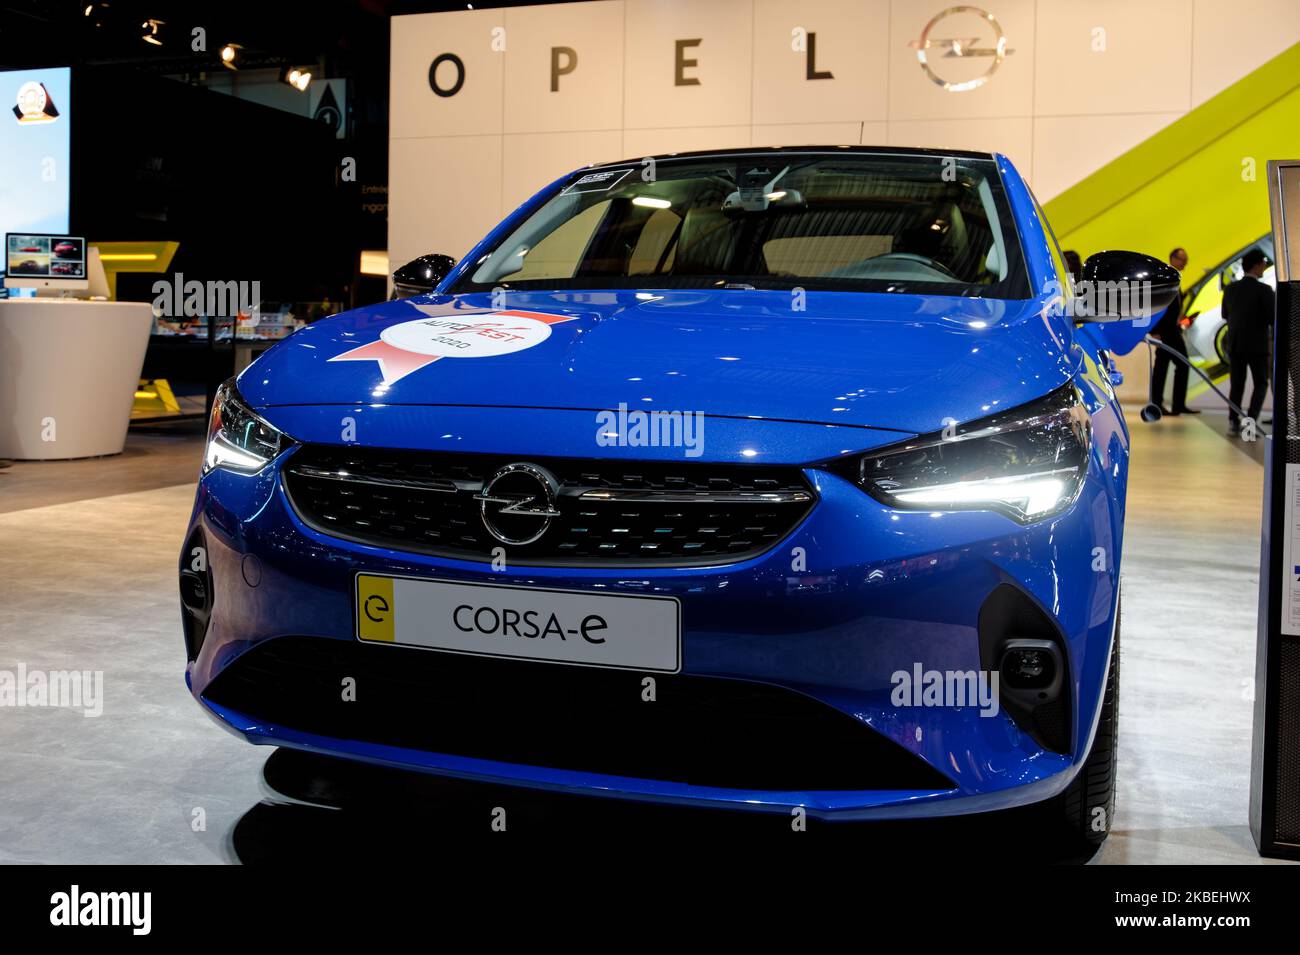 2020 Opel Corsa Sedan  Opel corsa, Opel, Sedan